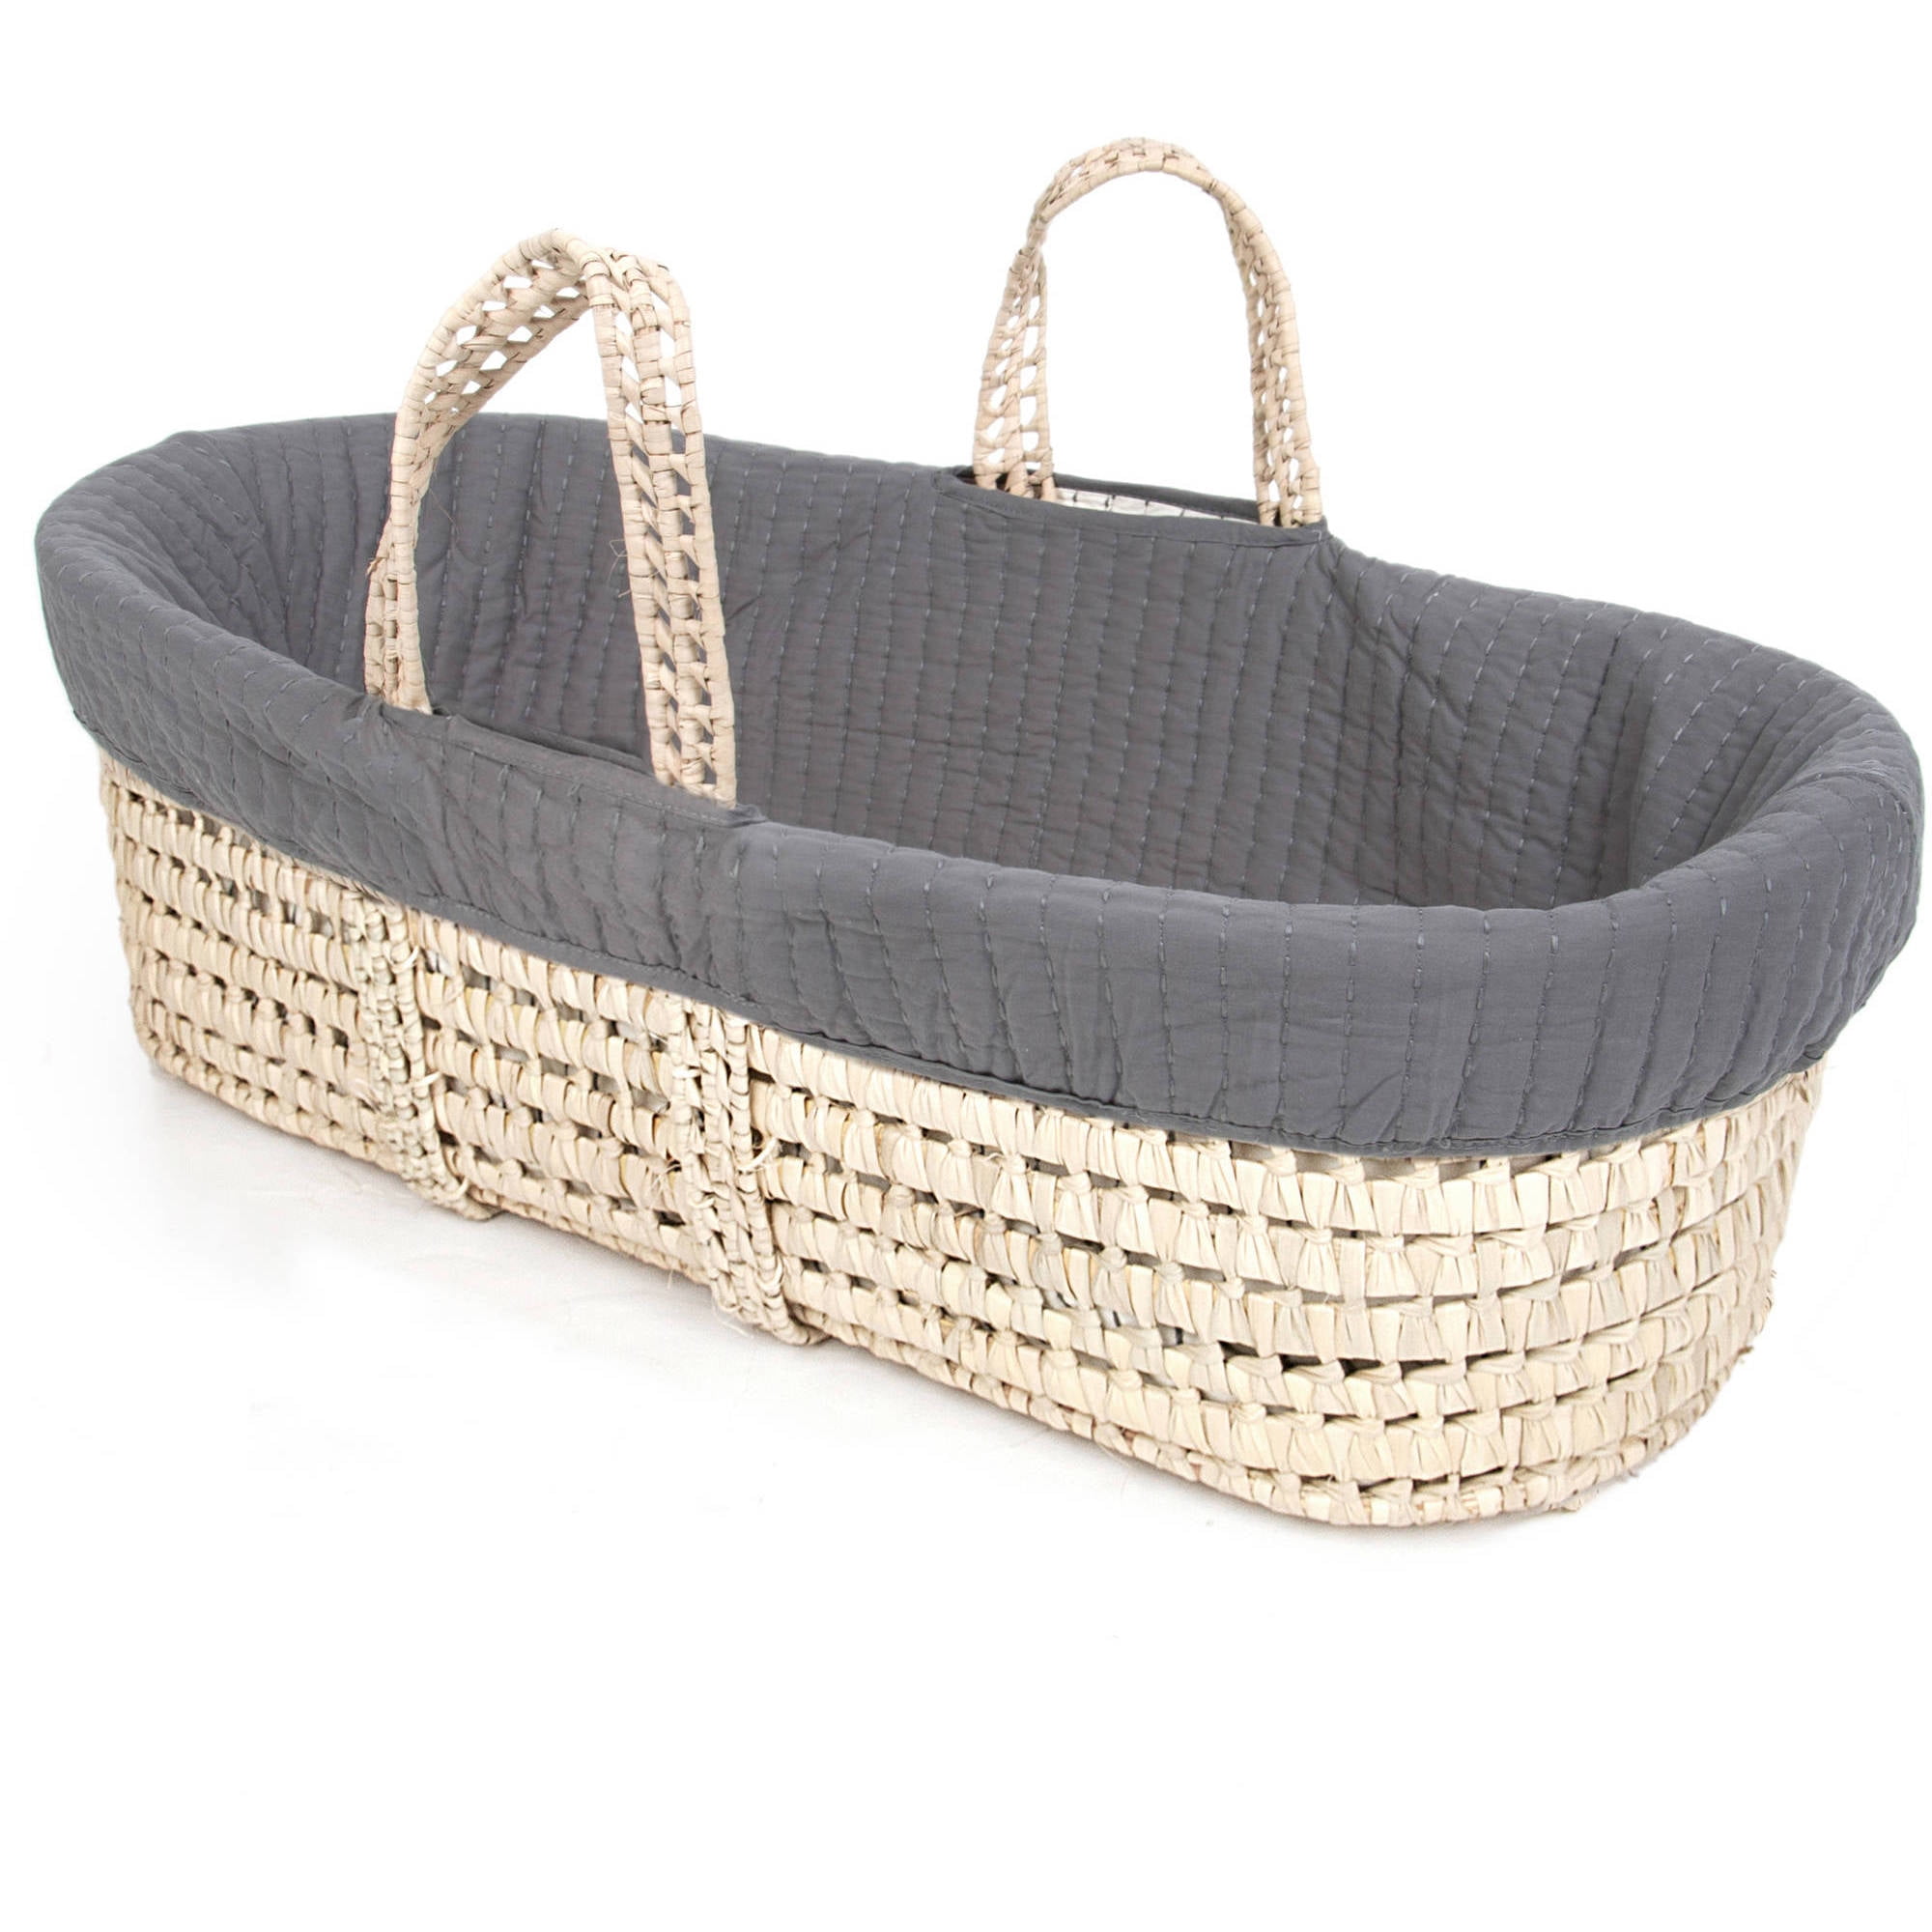 moses basket bedding set